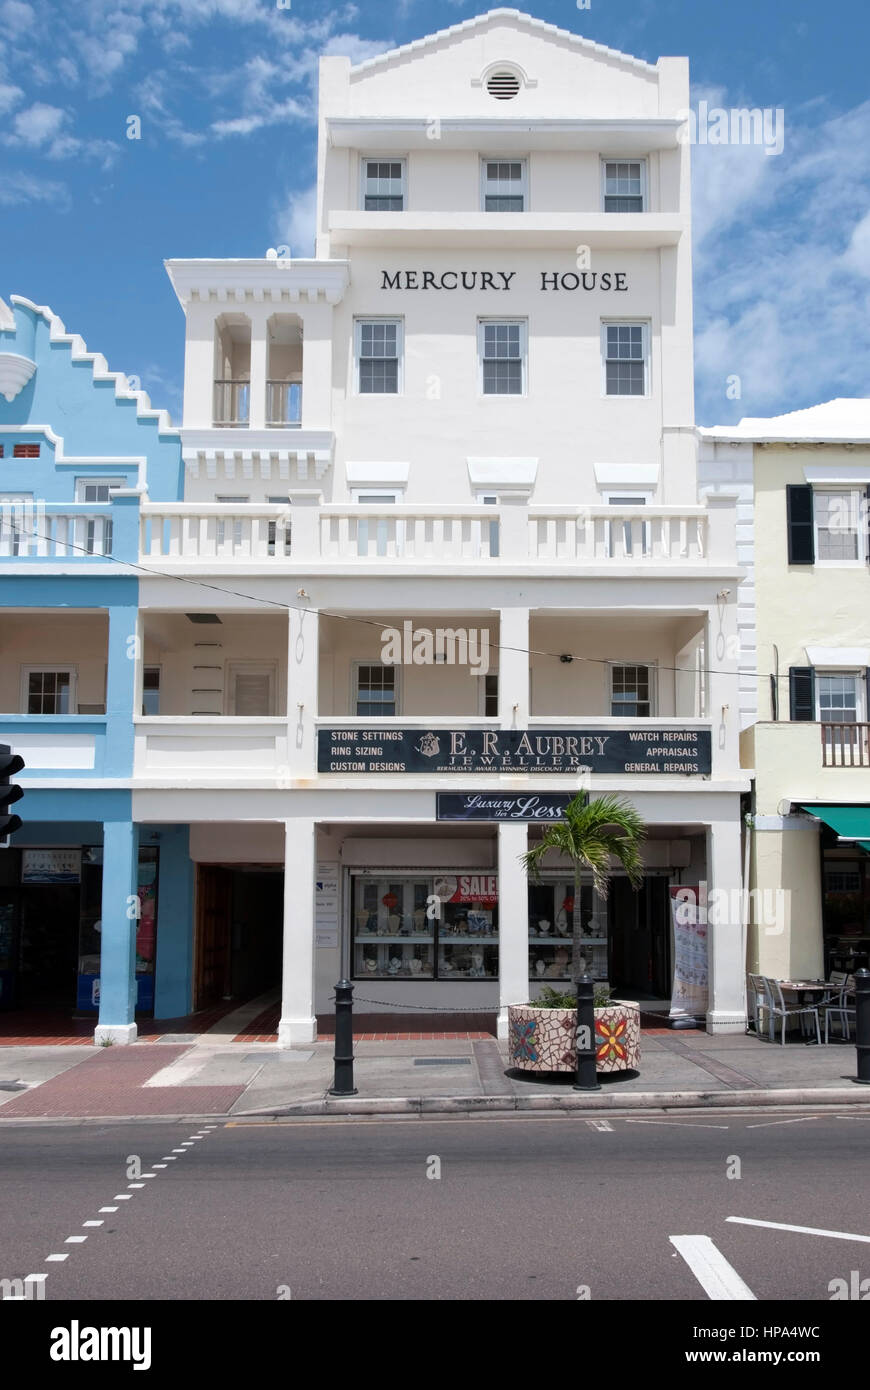 E.r. Aubrey Juwelier Shop Merkur Haus Front Street Hamilton Bermuda Außenansicht traditionellen Bermudian hellen weißen fünf Shop Bürokomplex Stockfoto